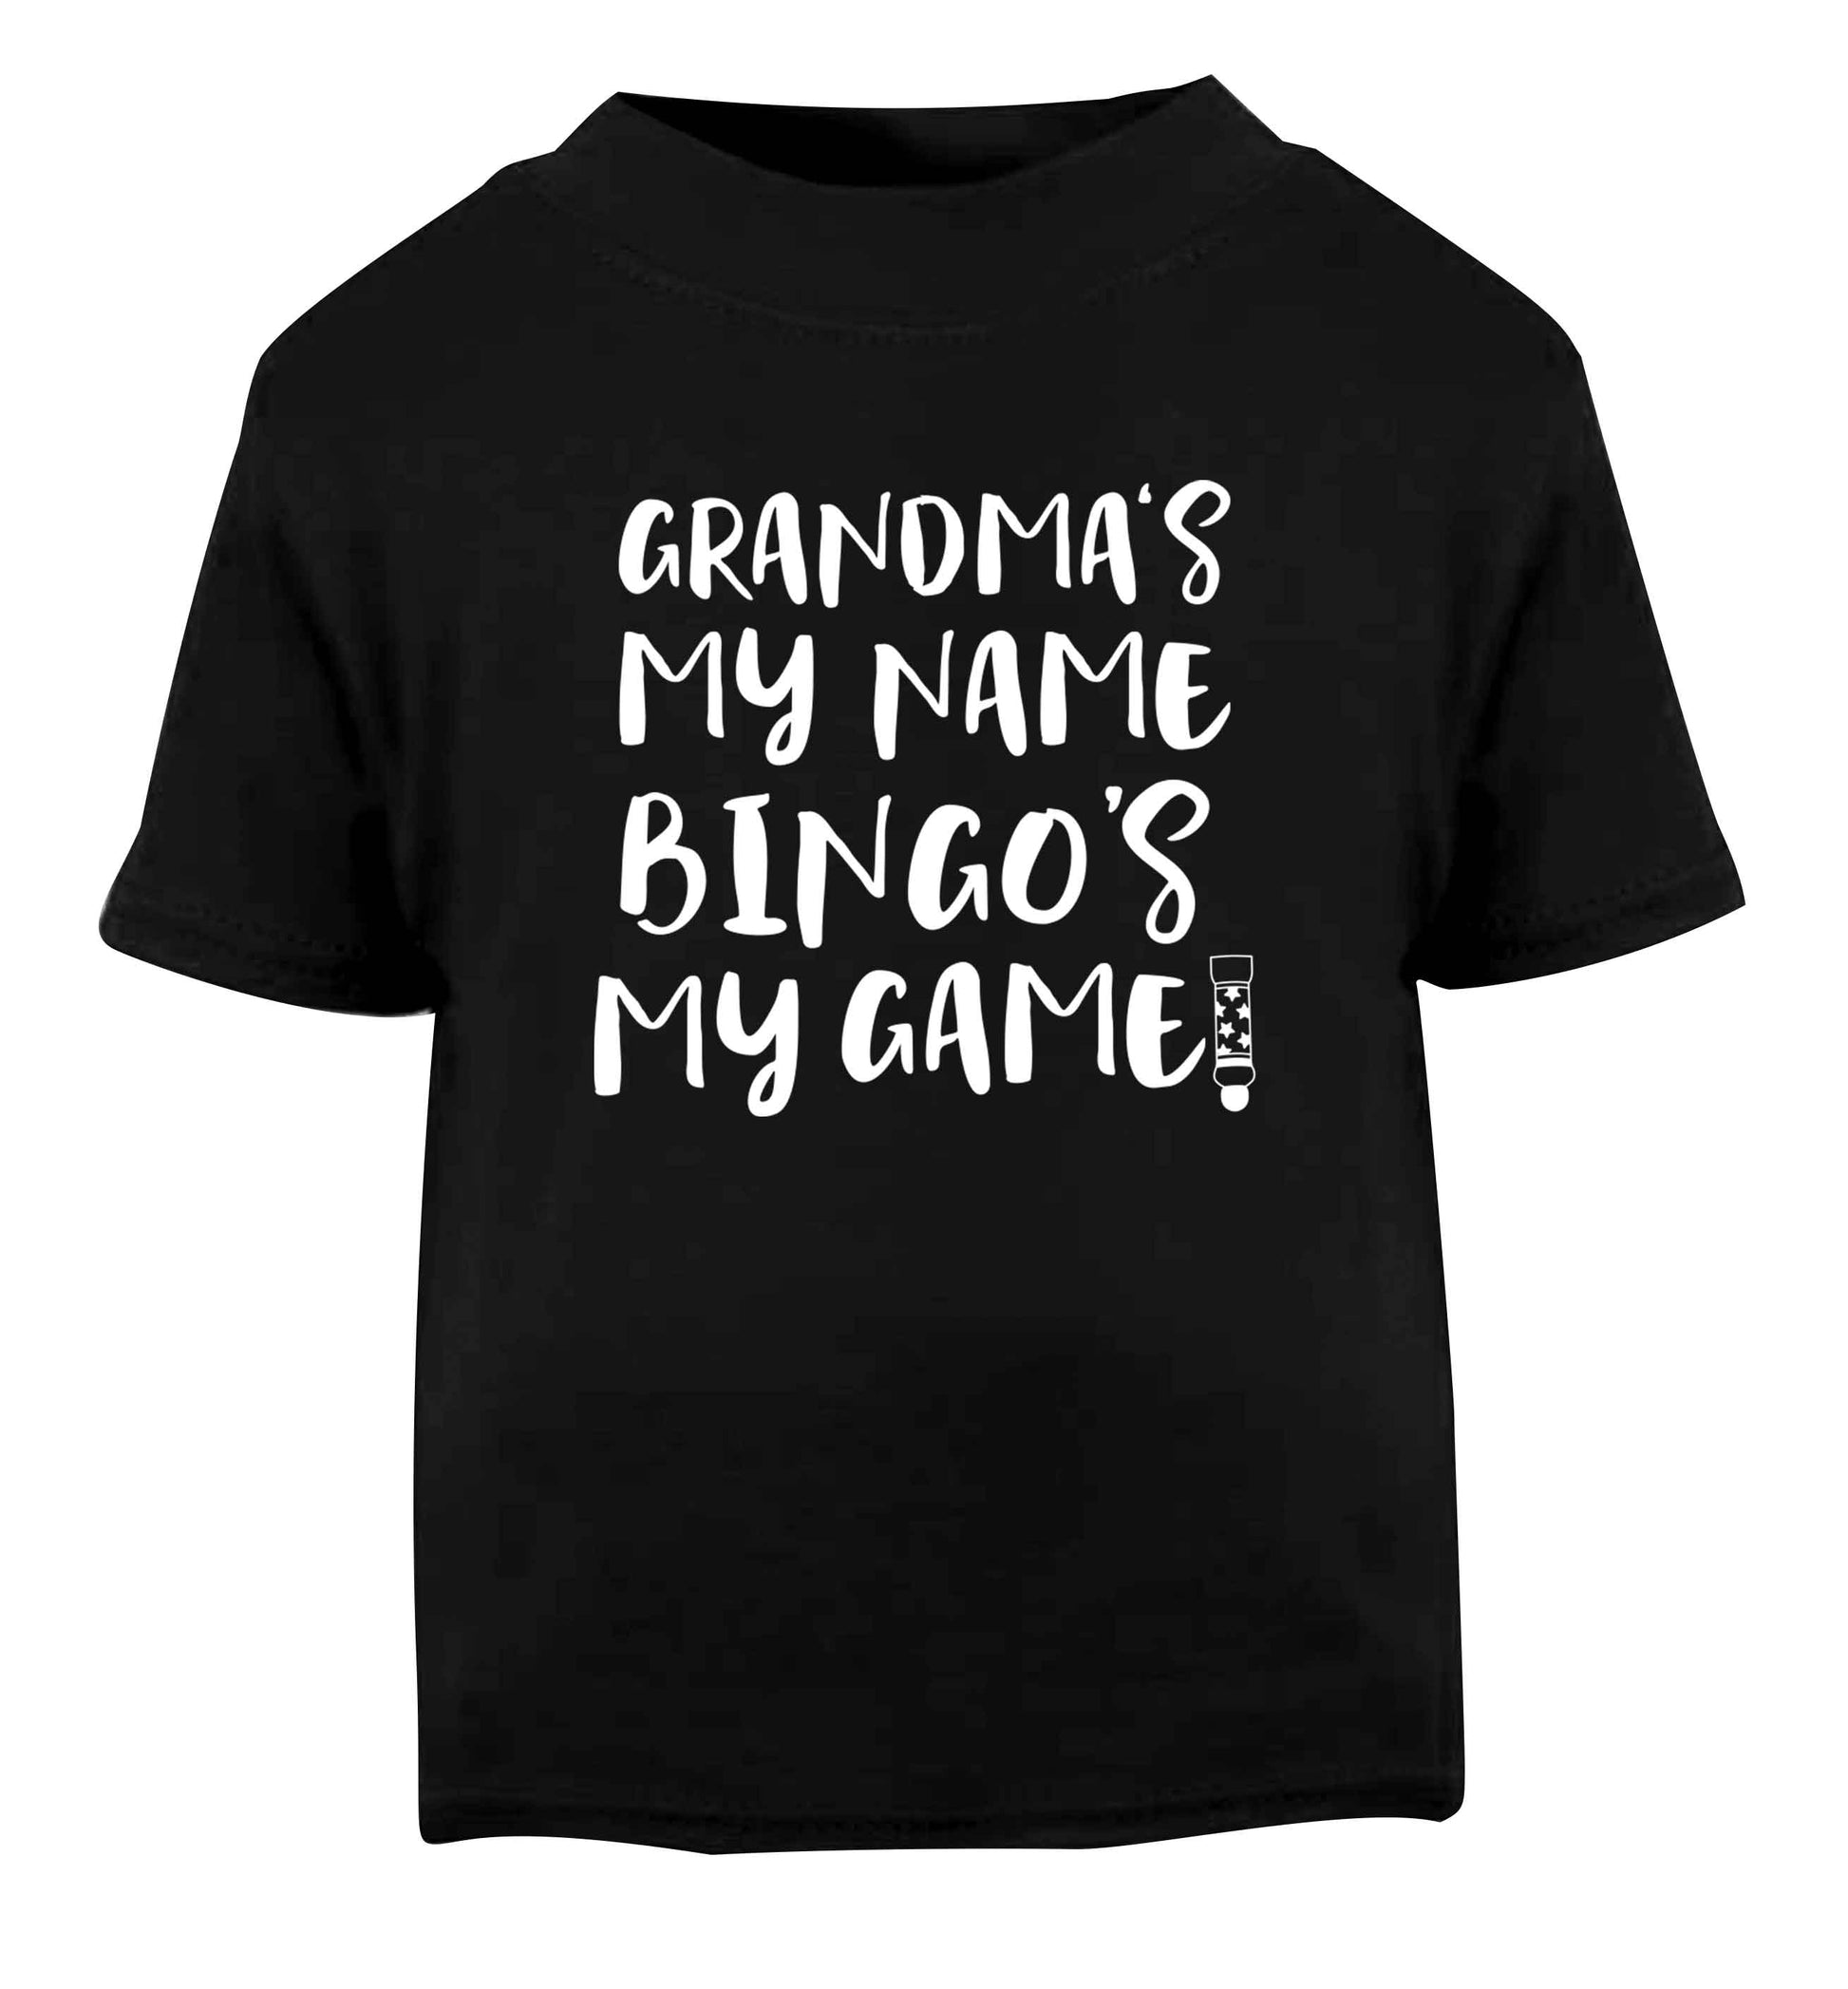 Grandma's my name bingo's my game! Black Baby Toddler Tshirt 2 years